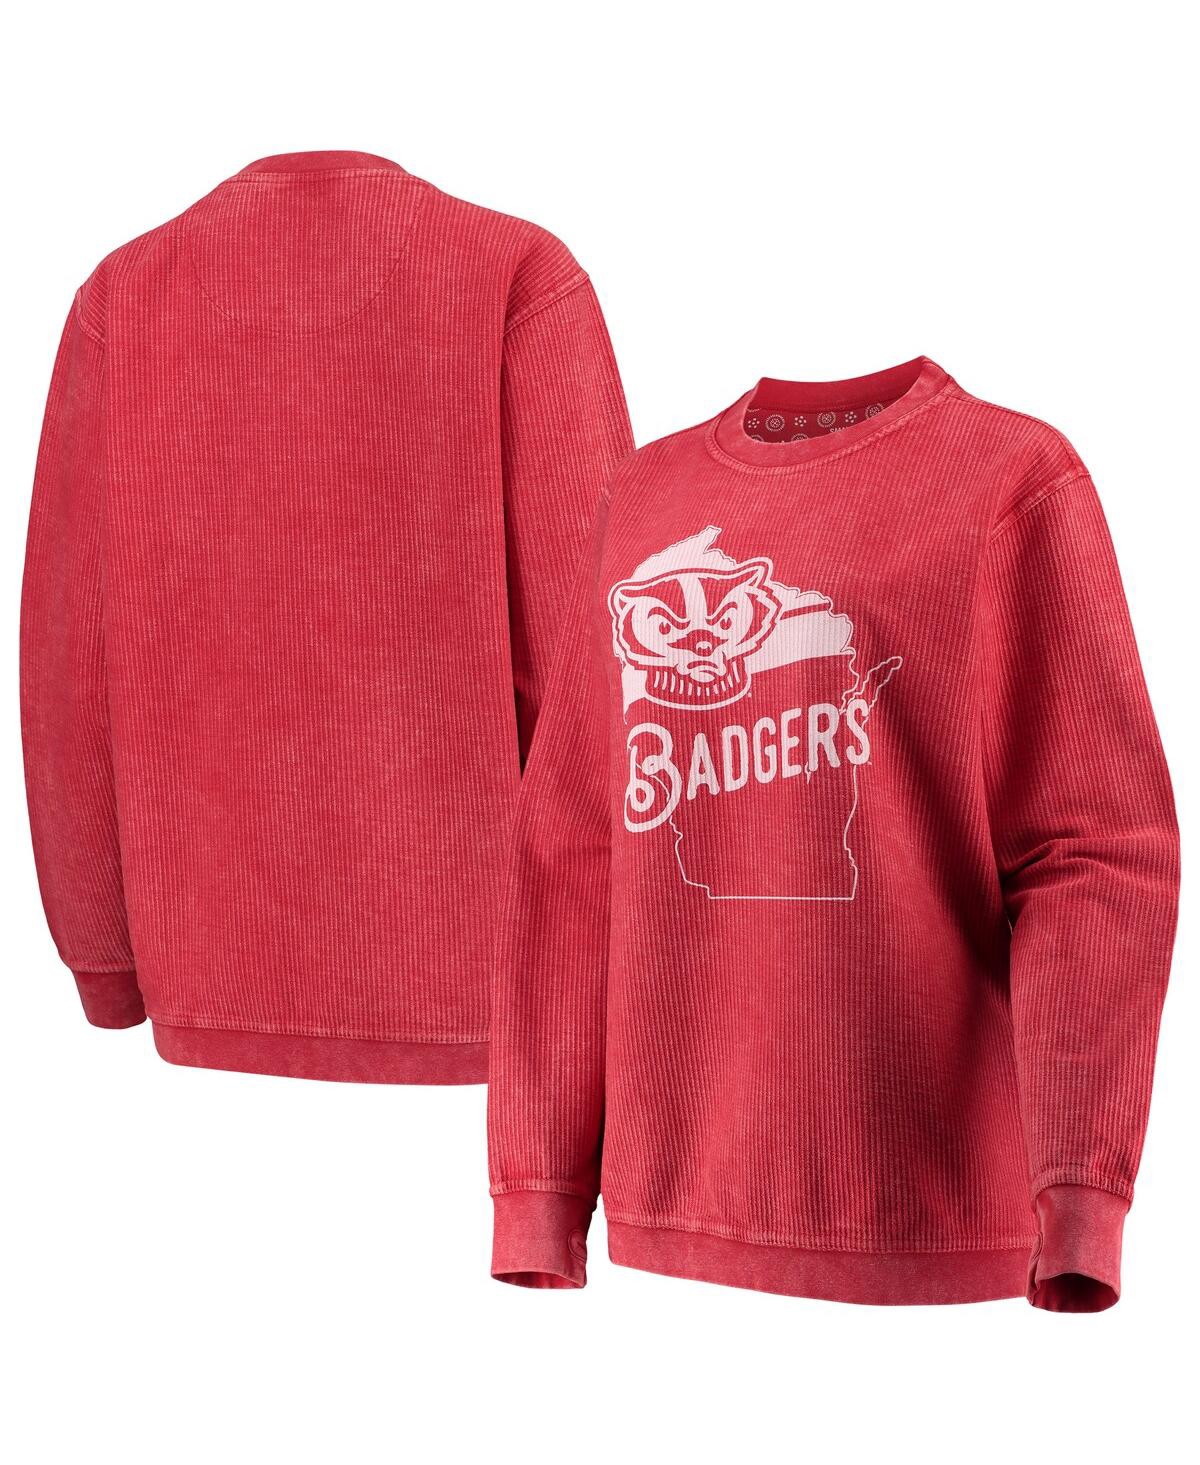 Women's Pressbox Red Wisconsin Badgers Comfy Cord Corduroy Crewneck Sweatshirt - Red